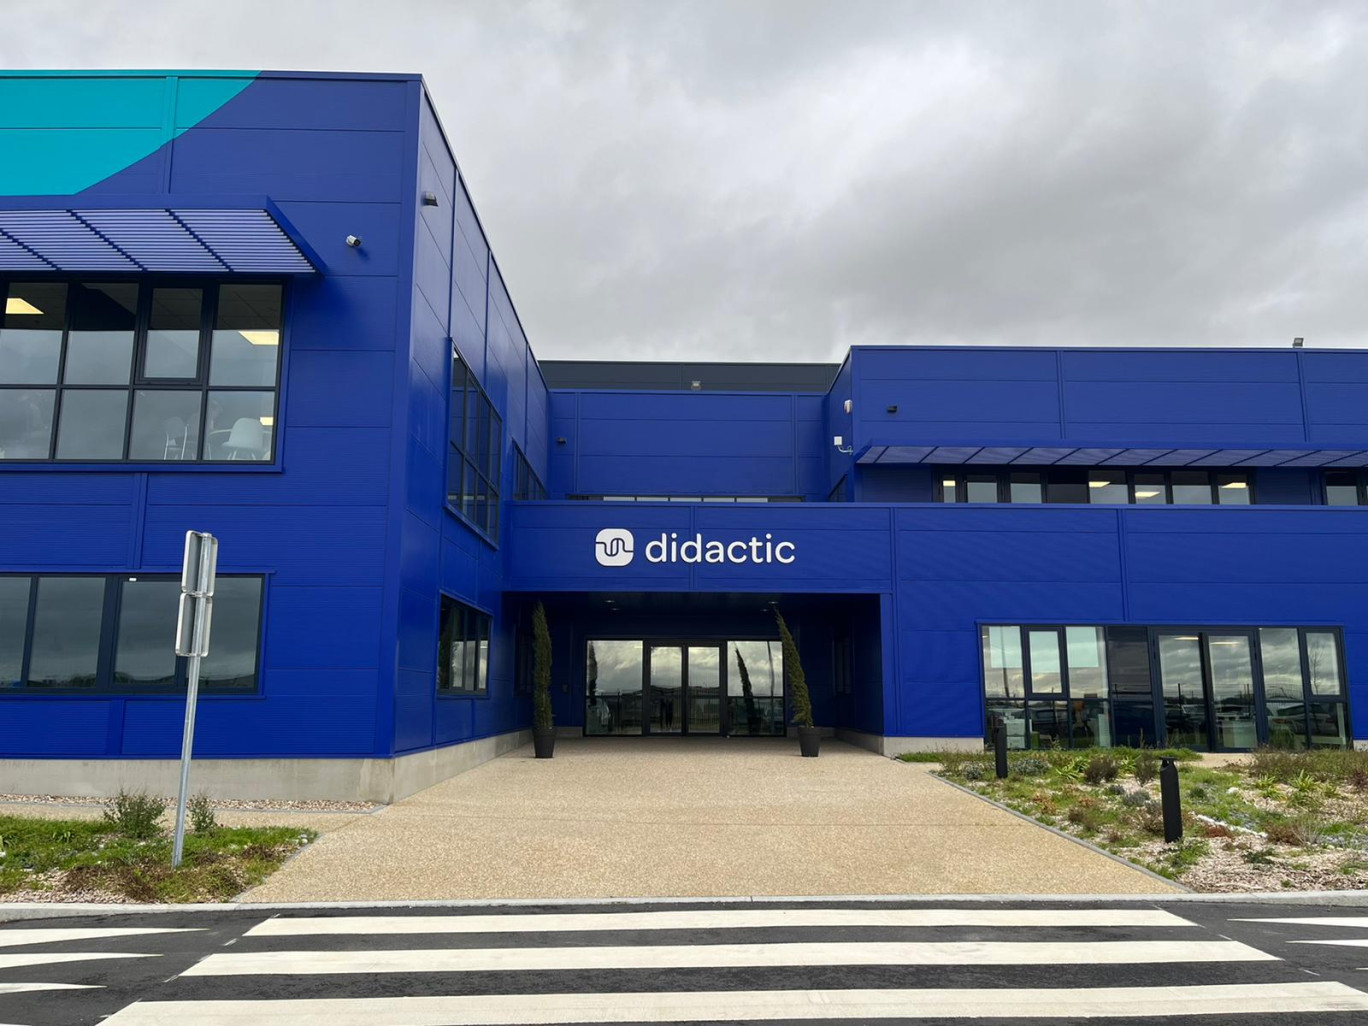 Le nouveau site du groupe Didactic est situé à Saint-Jean-la-Neuville, près de Bolbec. (Photo CG)